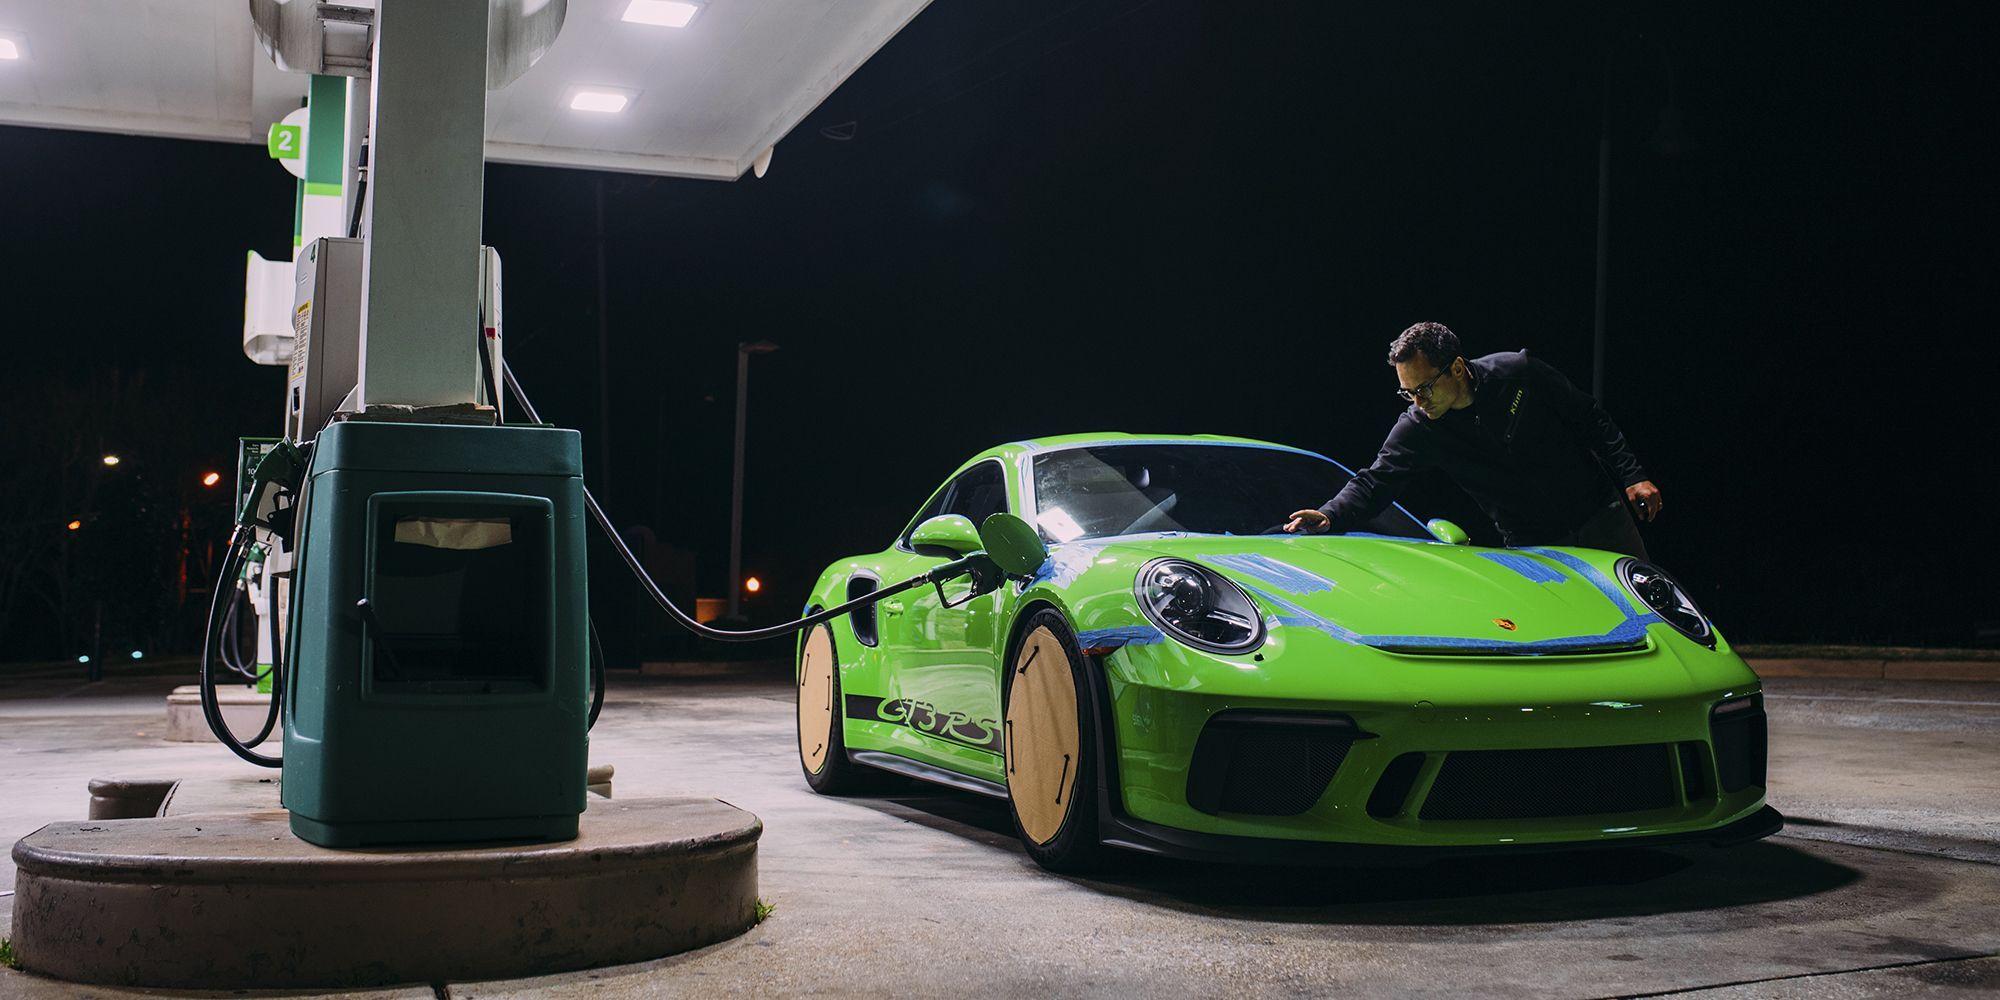 Porsche 911 at a gas station